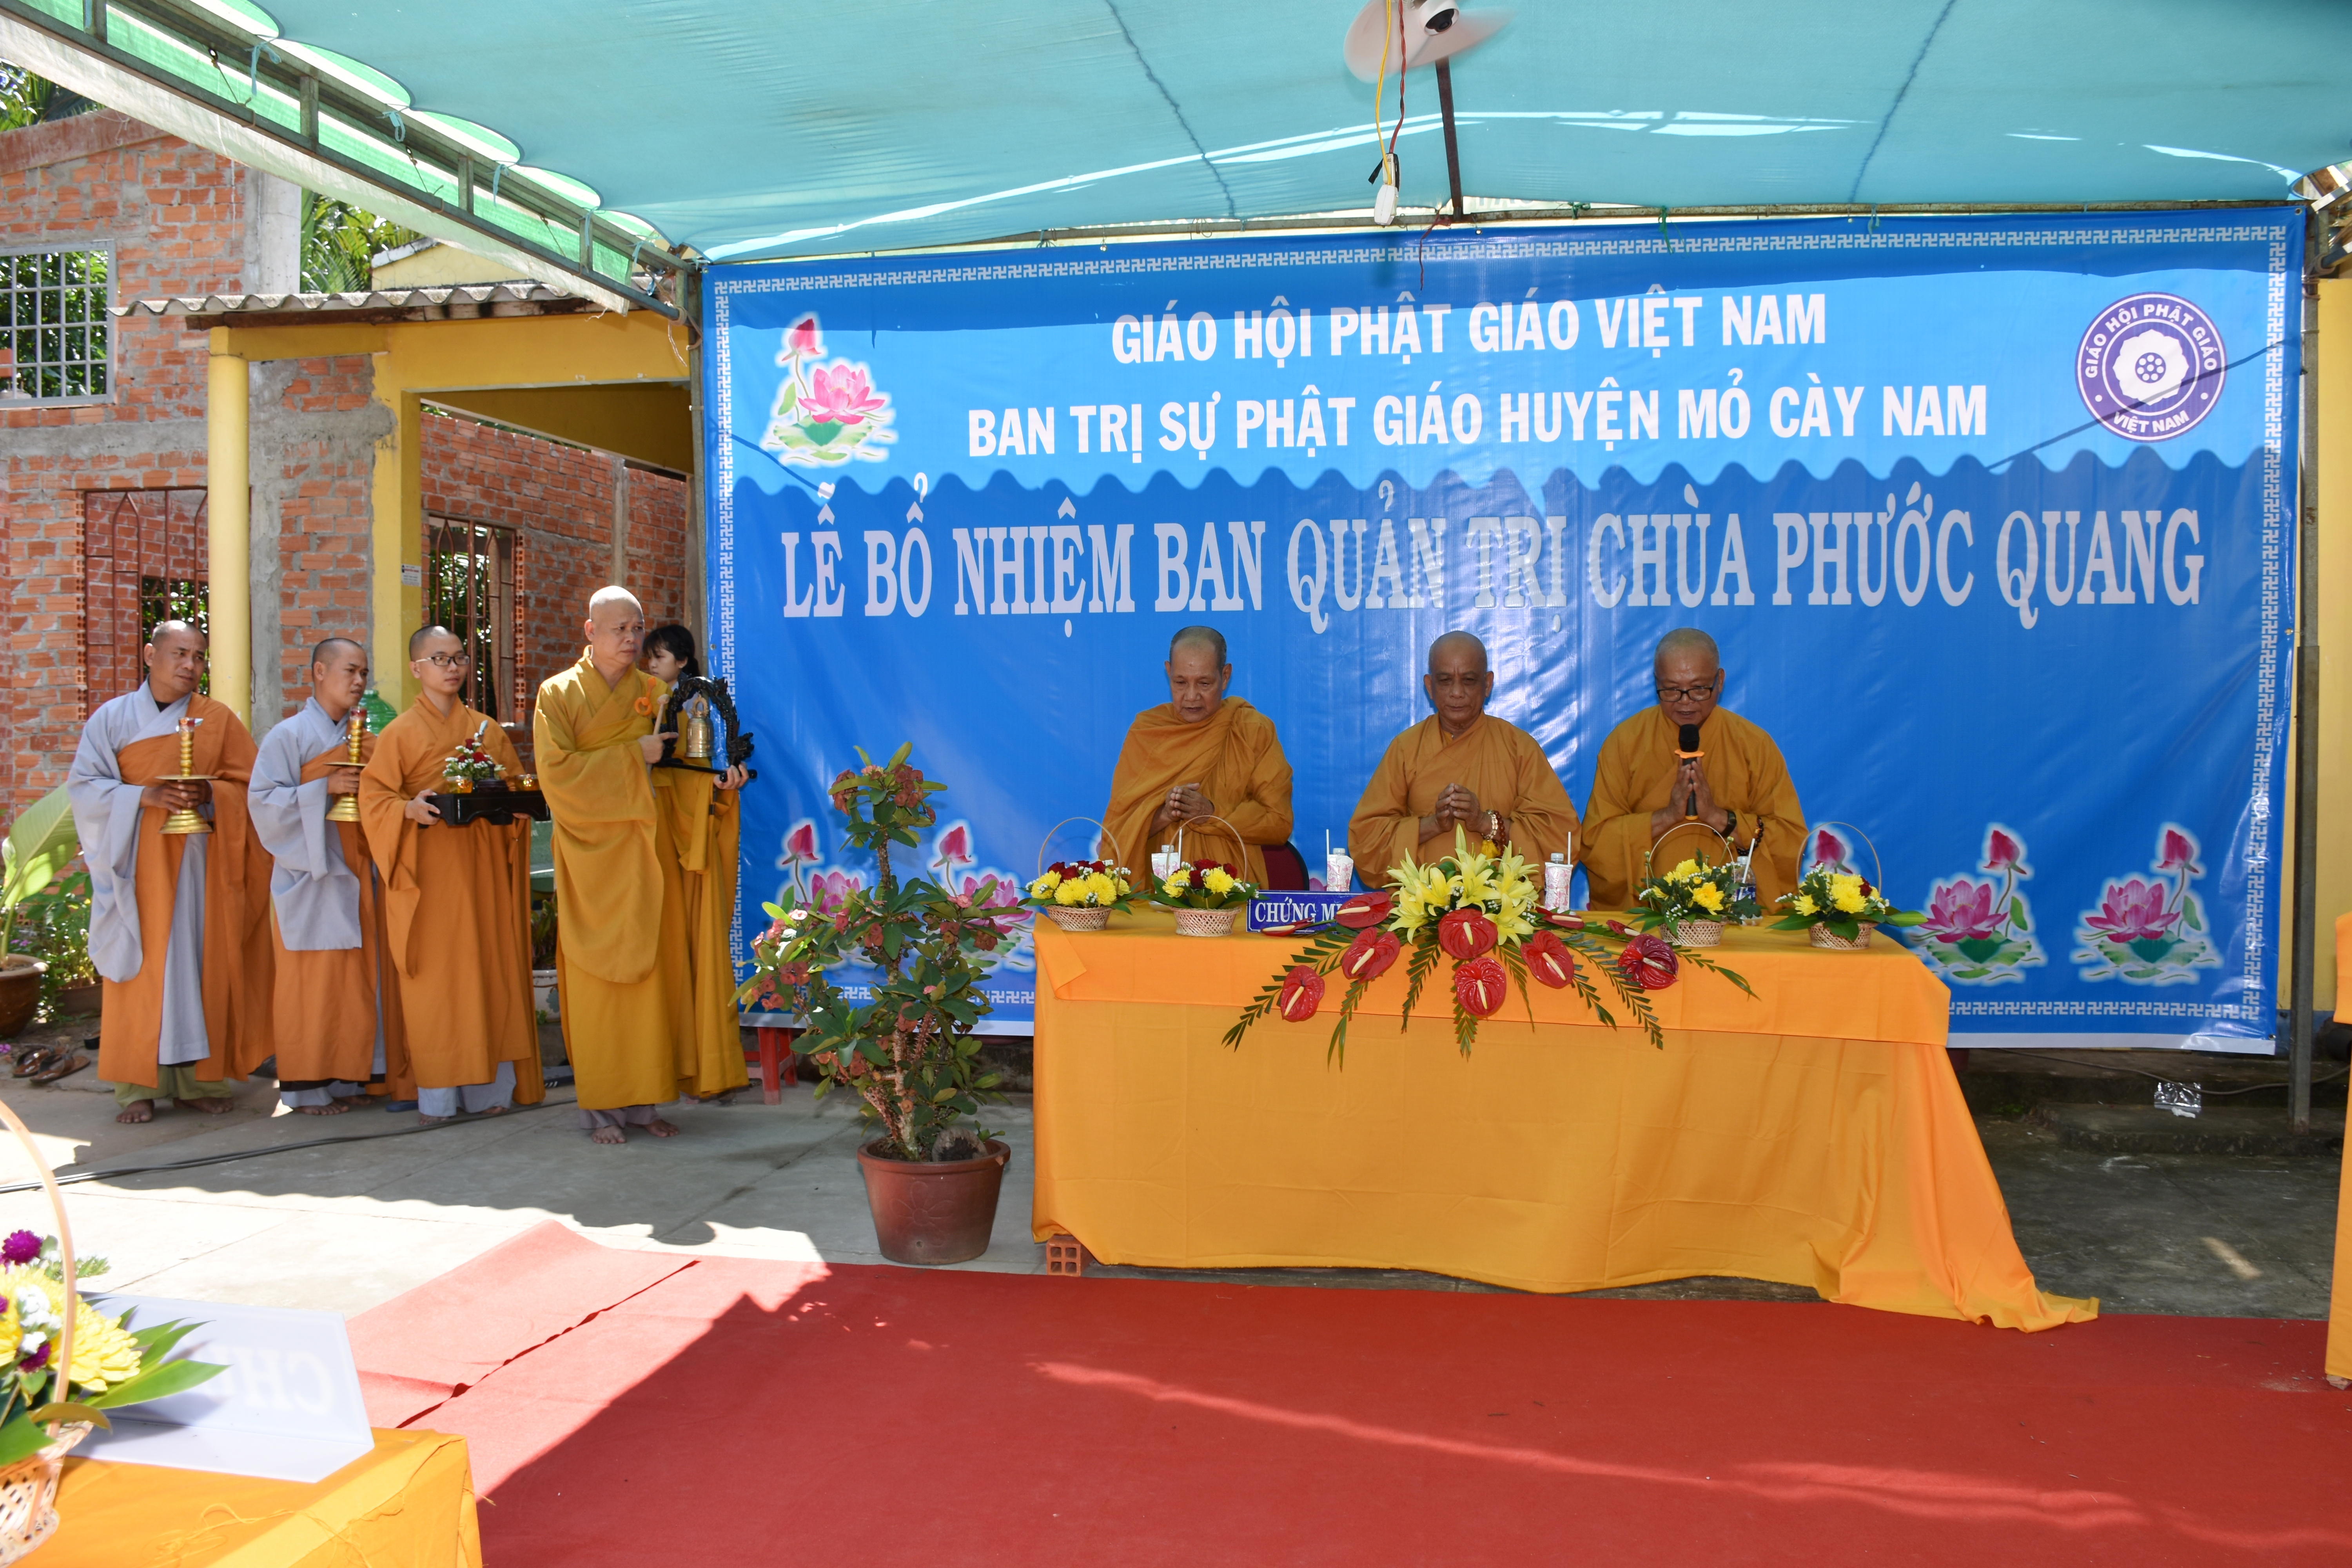 Mõ Cày Nam: Bổ nhiệm Ban quản trị chùa Phước Quang